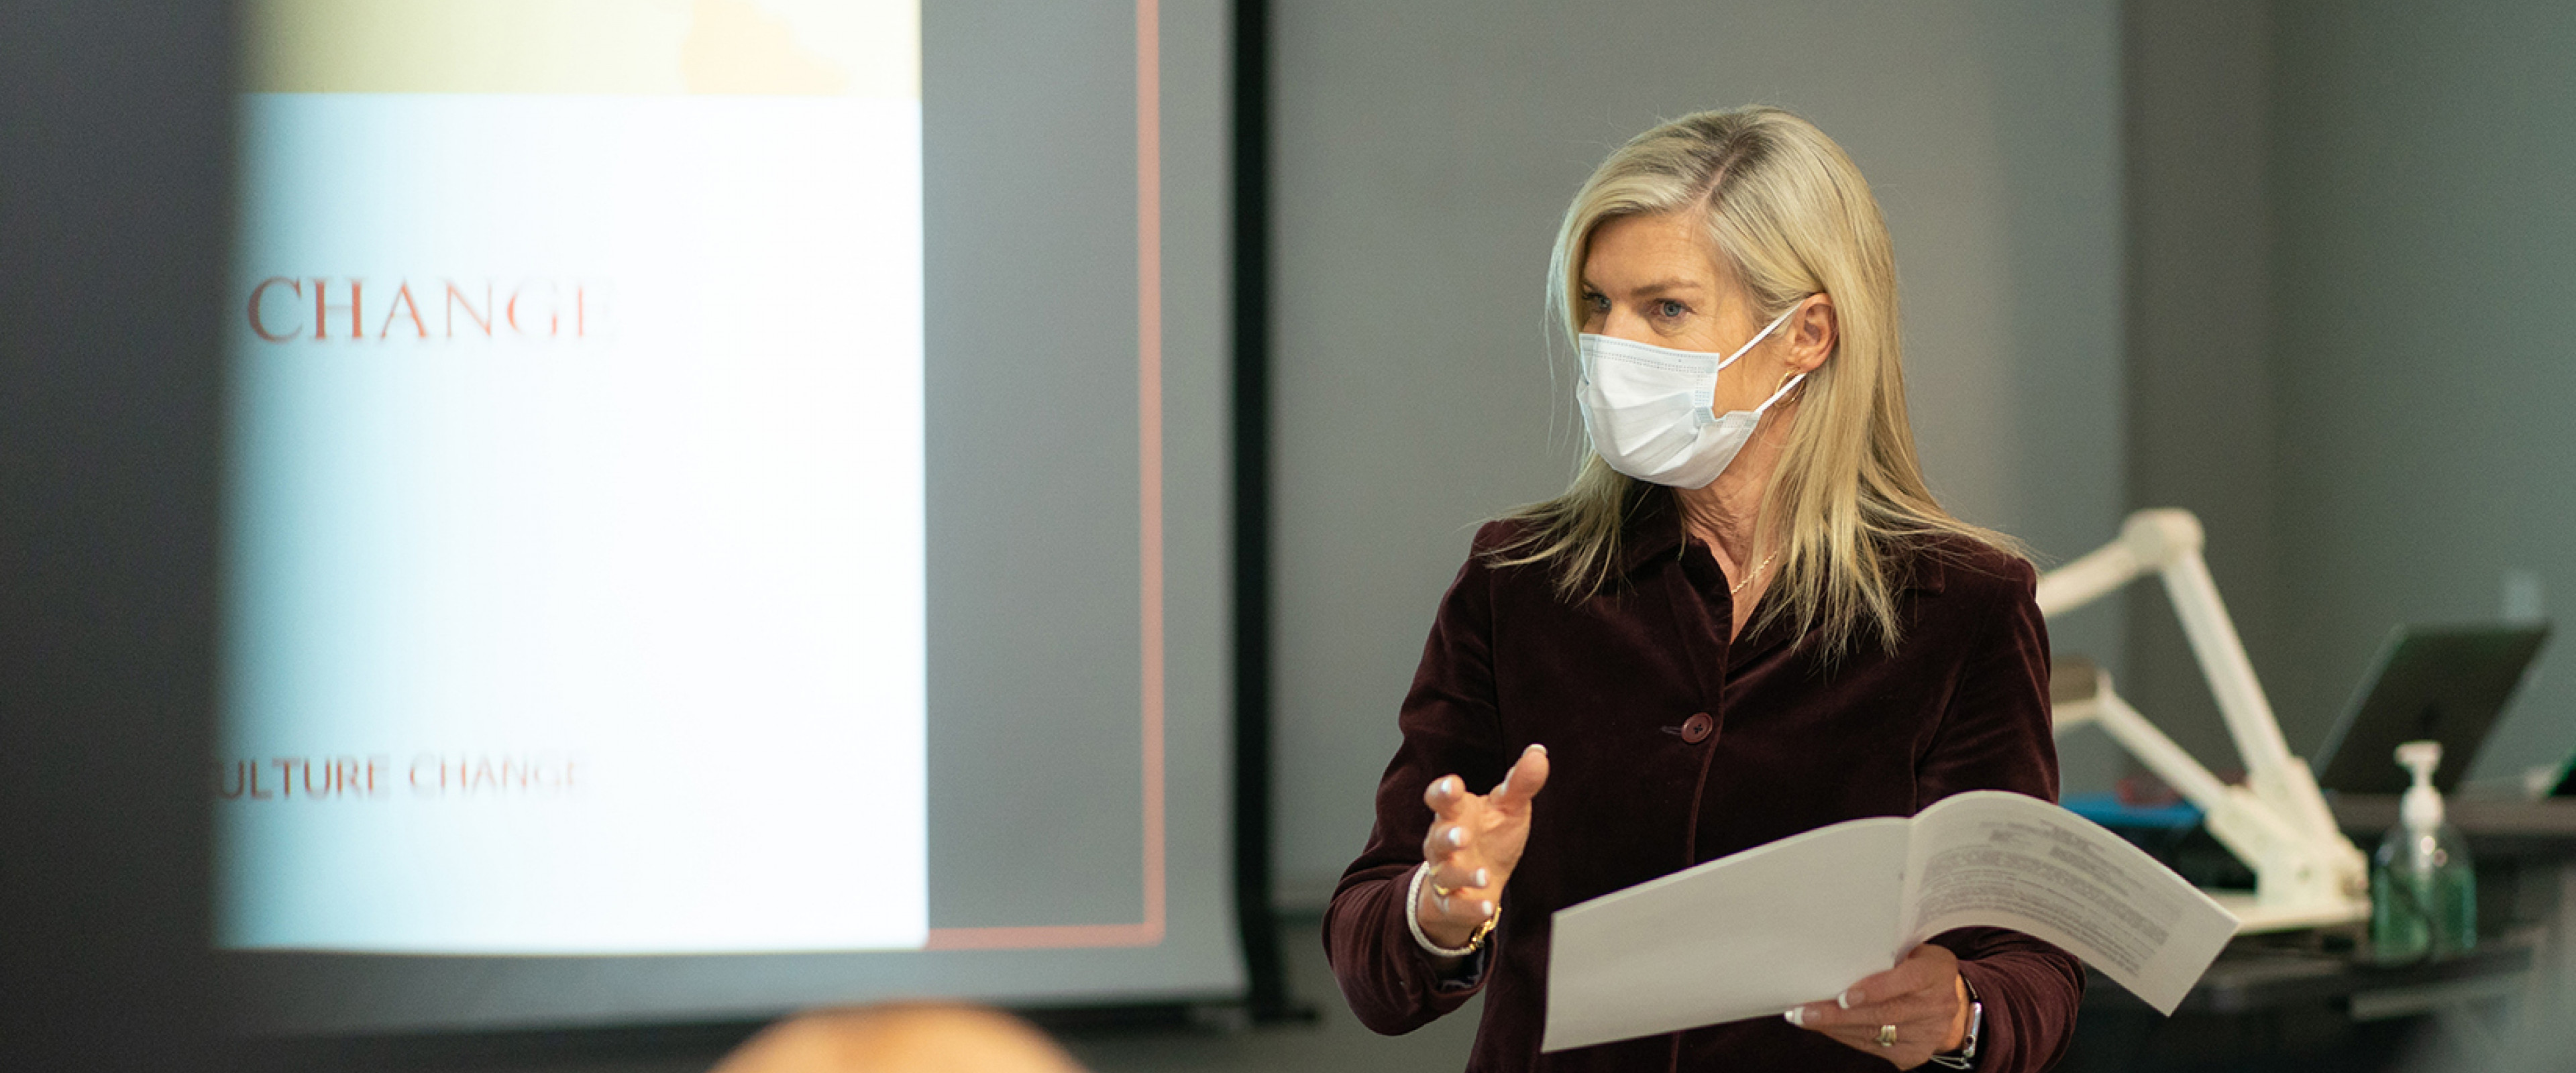 Jennifer Palthe, wearing a mask, teaches an MBA class.